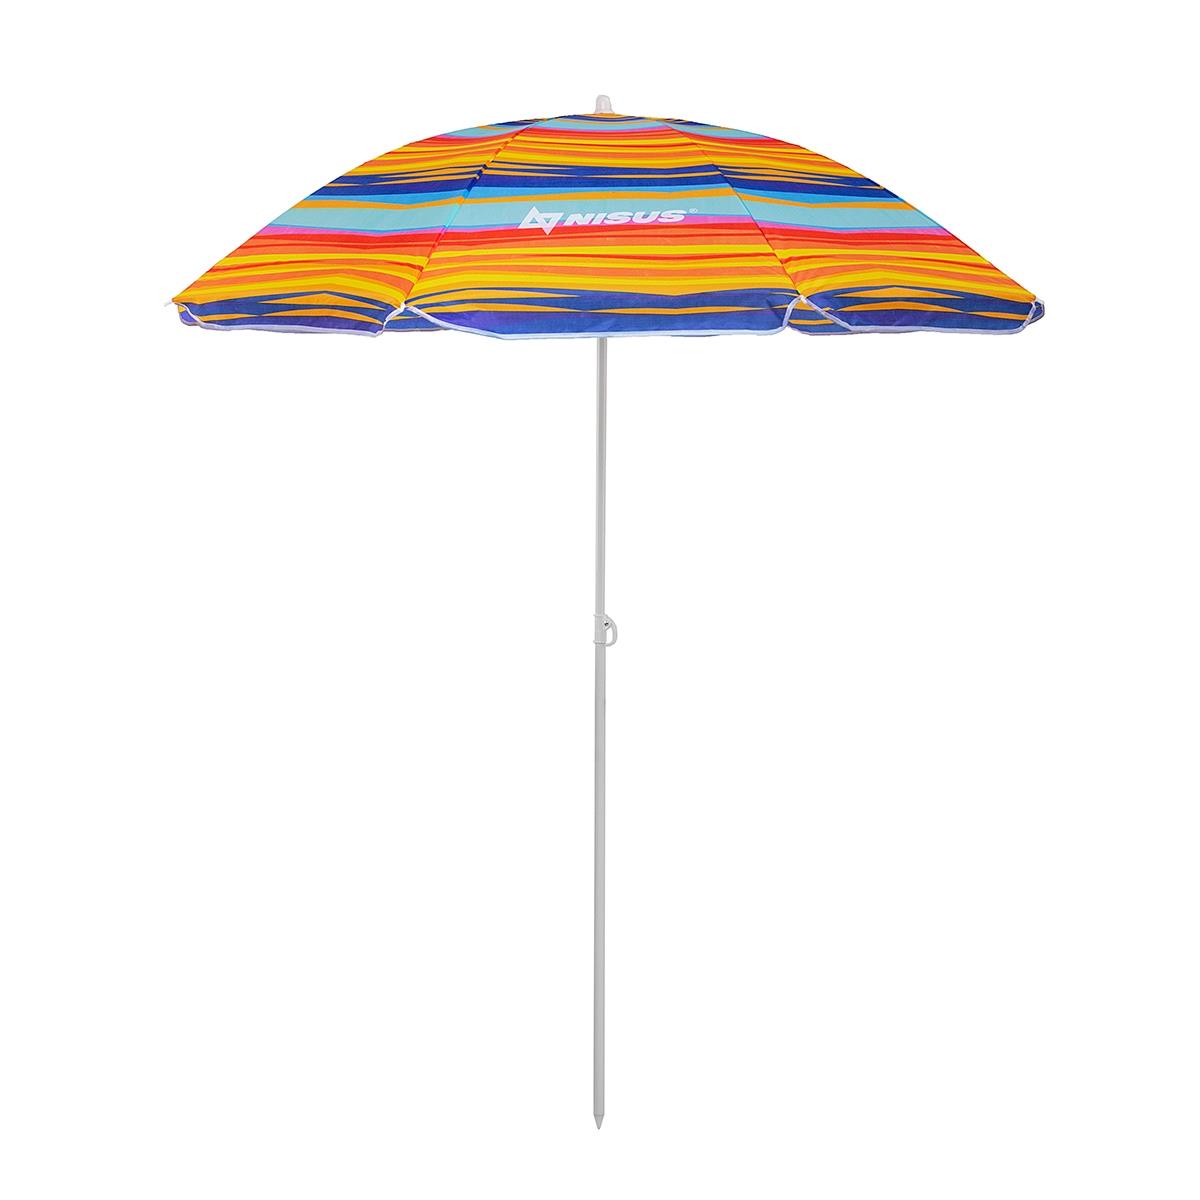 Зонт пляжный d 2,00м прямой (22/25/170Т) NA-200-SO  Nisus зонт пляжный d 1 8м с наклоном арбуз 19 22 170т na bu1907 180 w nisus